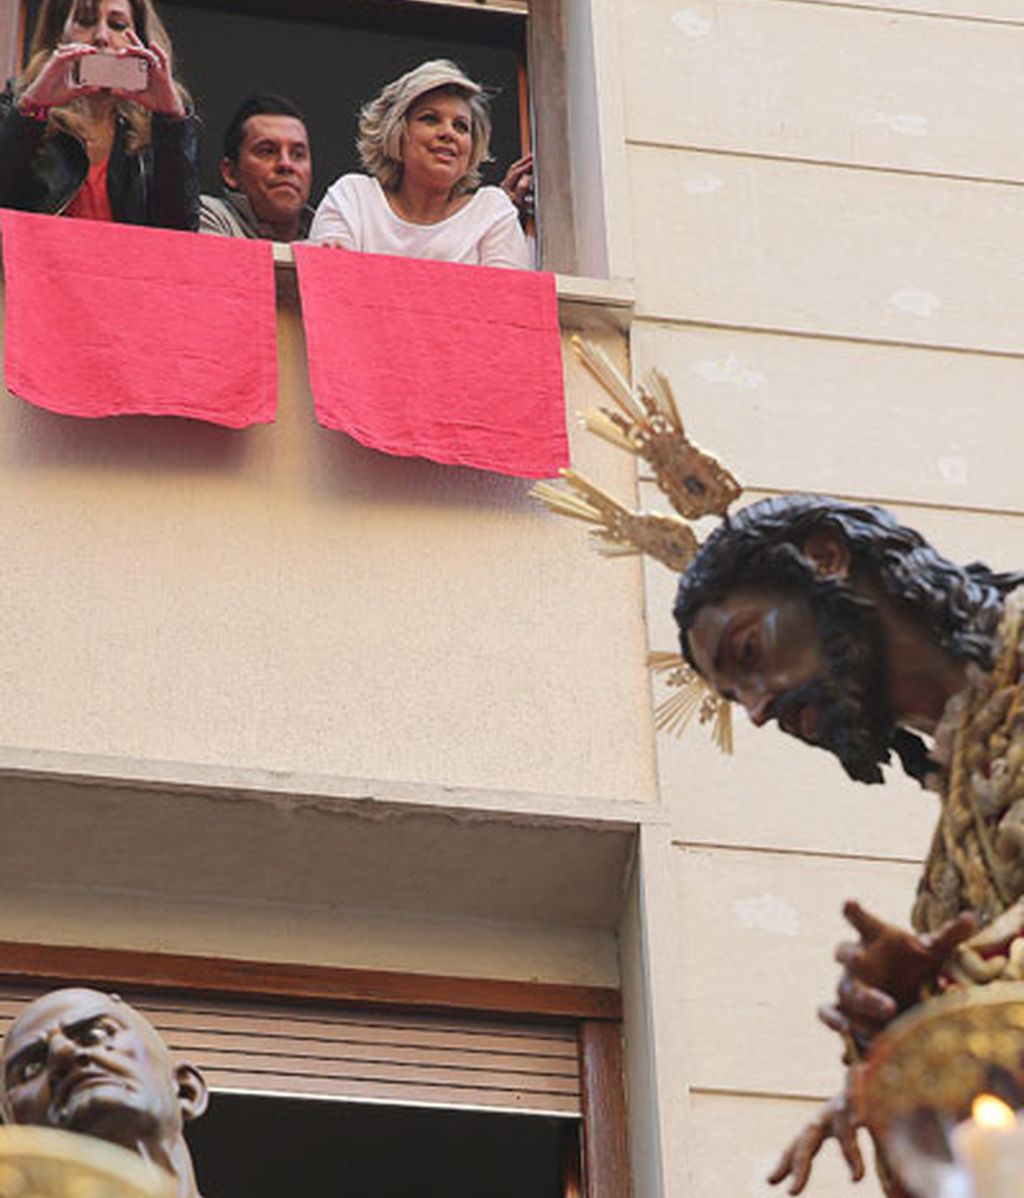 Famosos y devotos: Fran Rivera, Banderas o Luis Medina exhiben su devoción cristiana